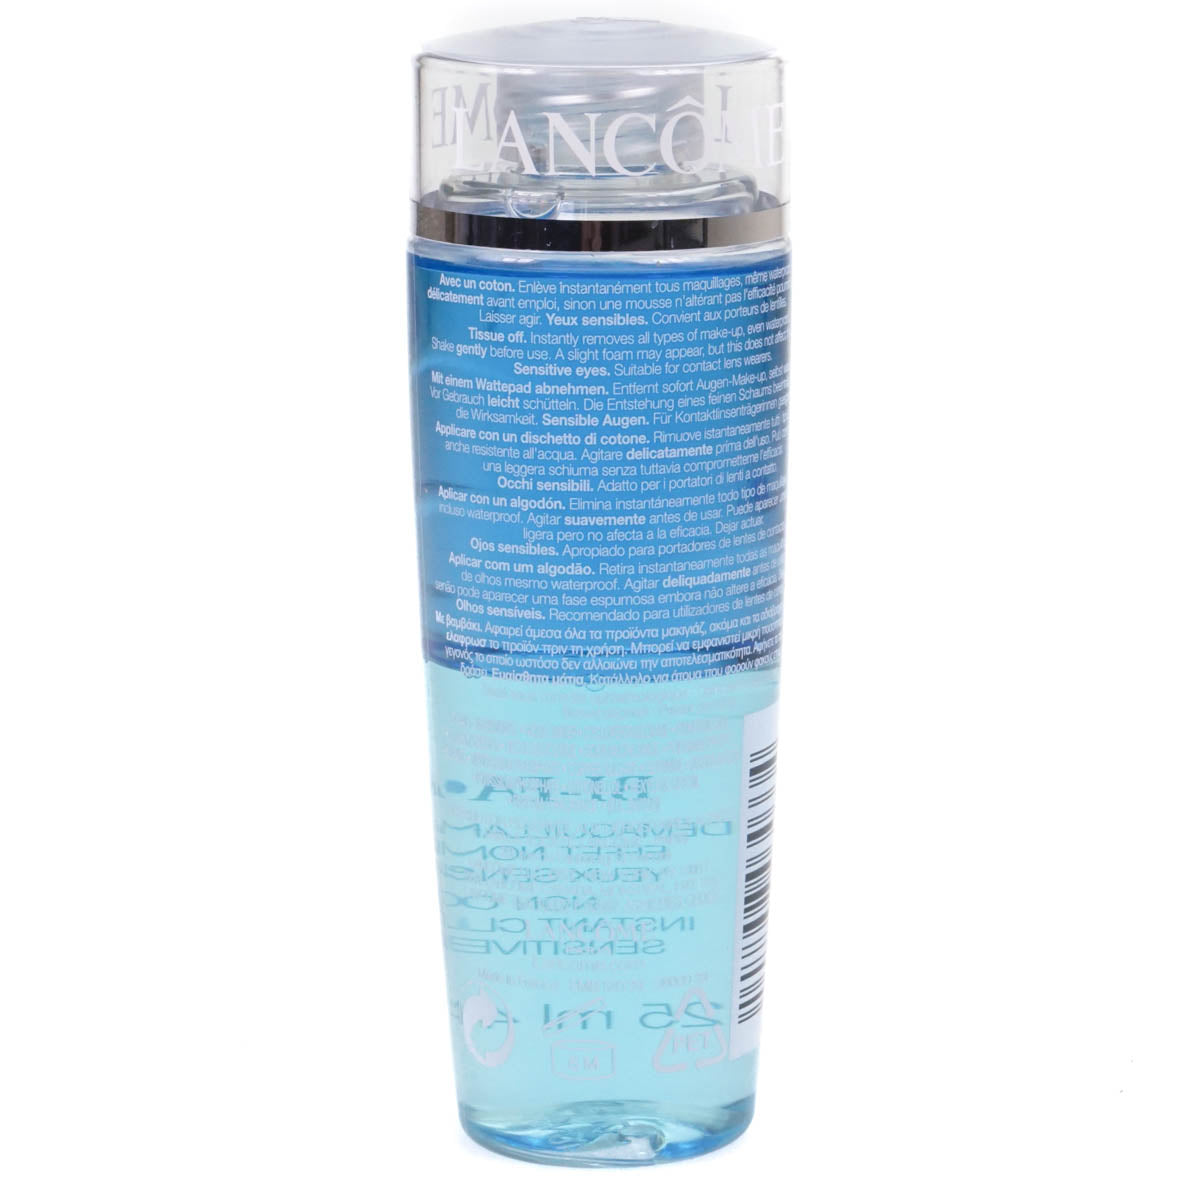 Lancome Bi-Facil Non Oily Cleanser 125ml Make Up Remover